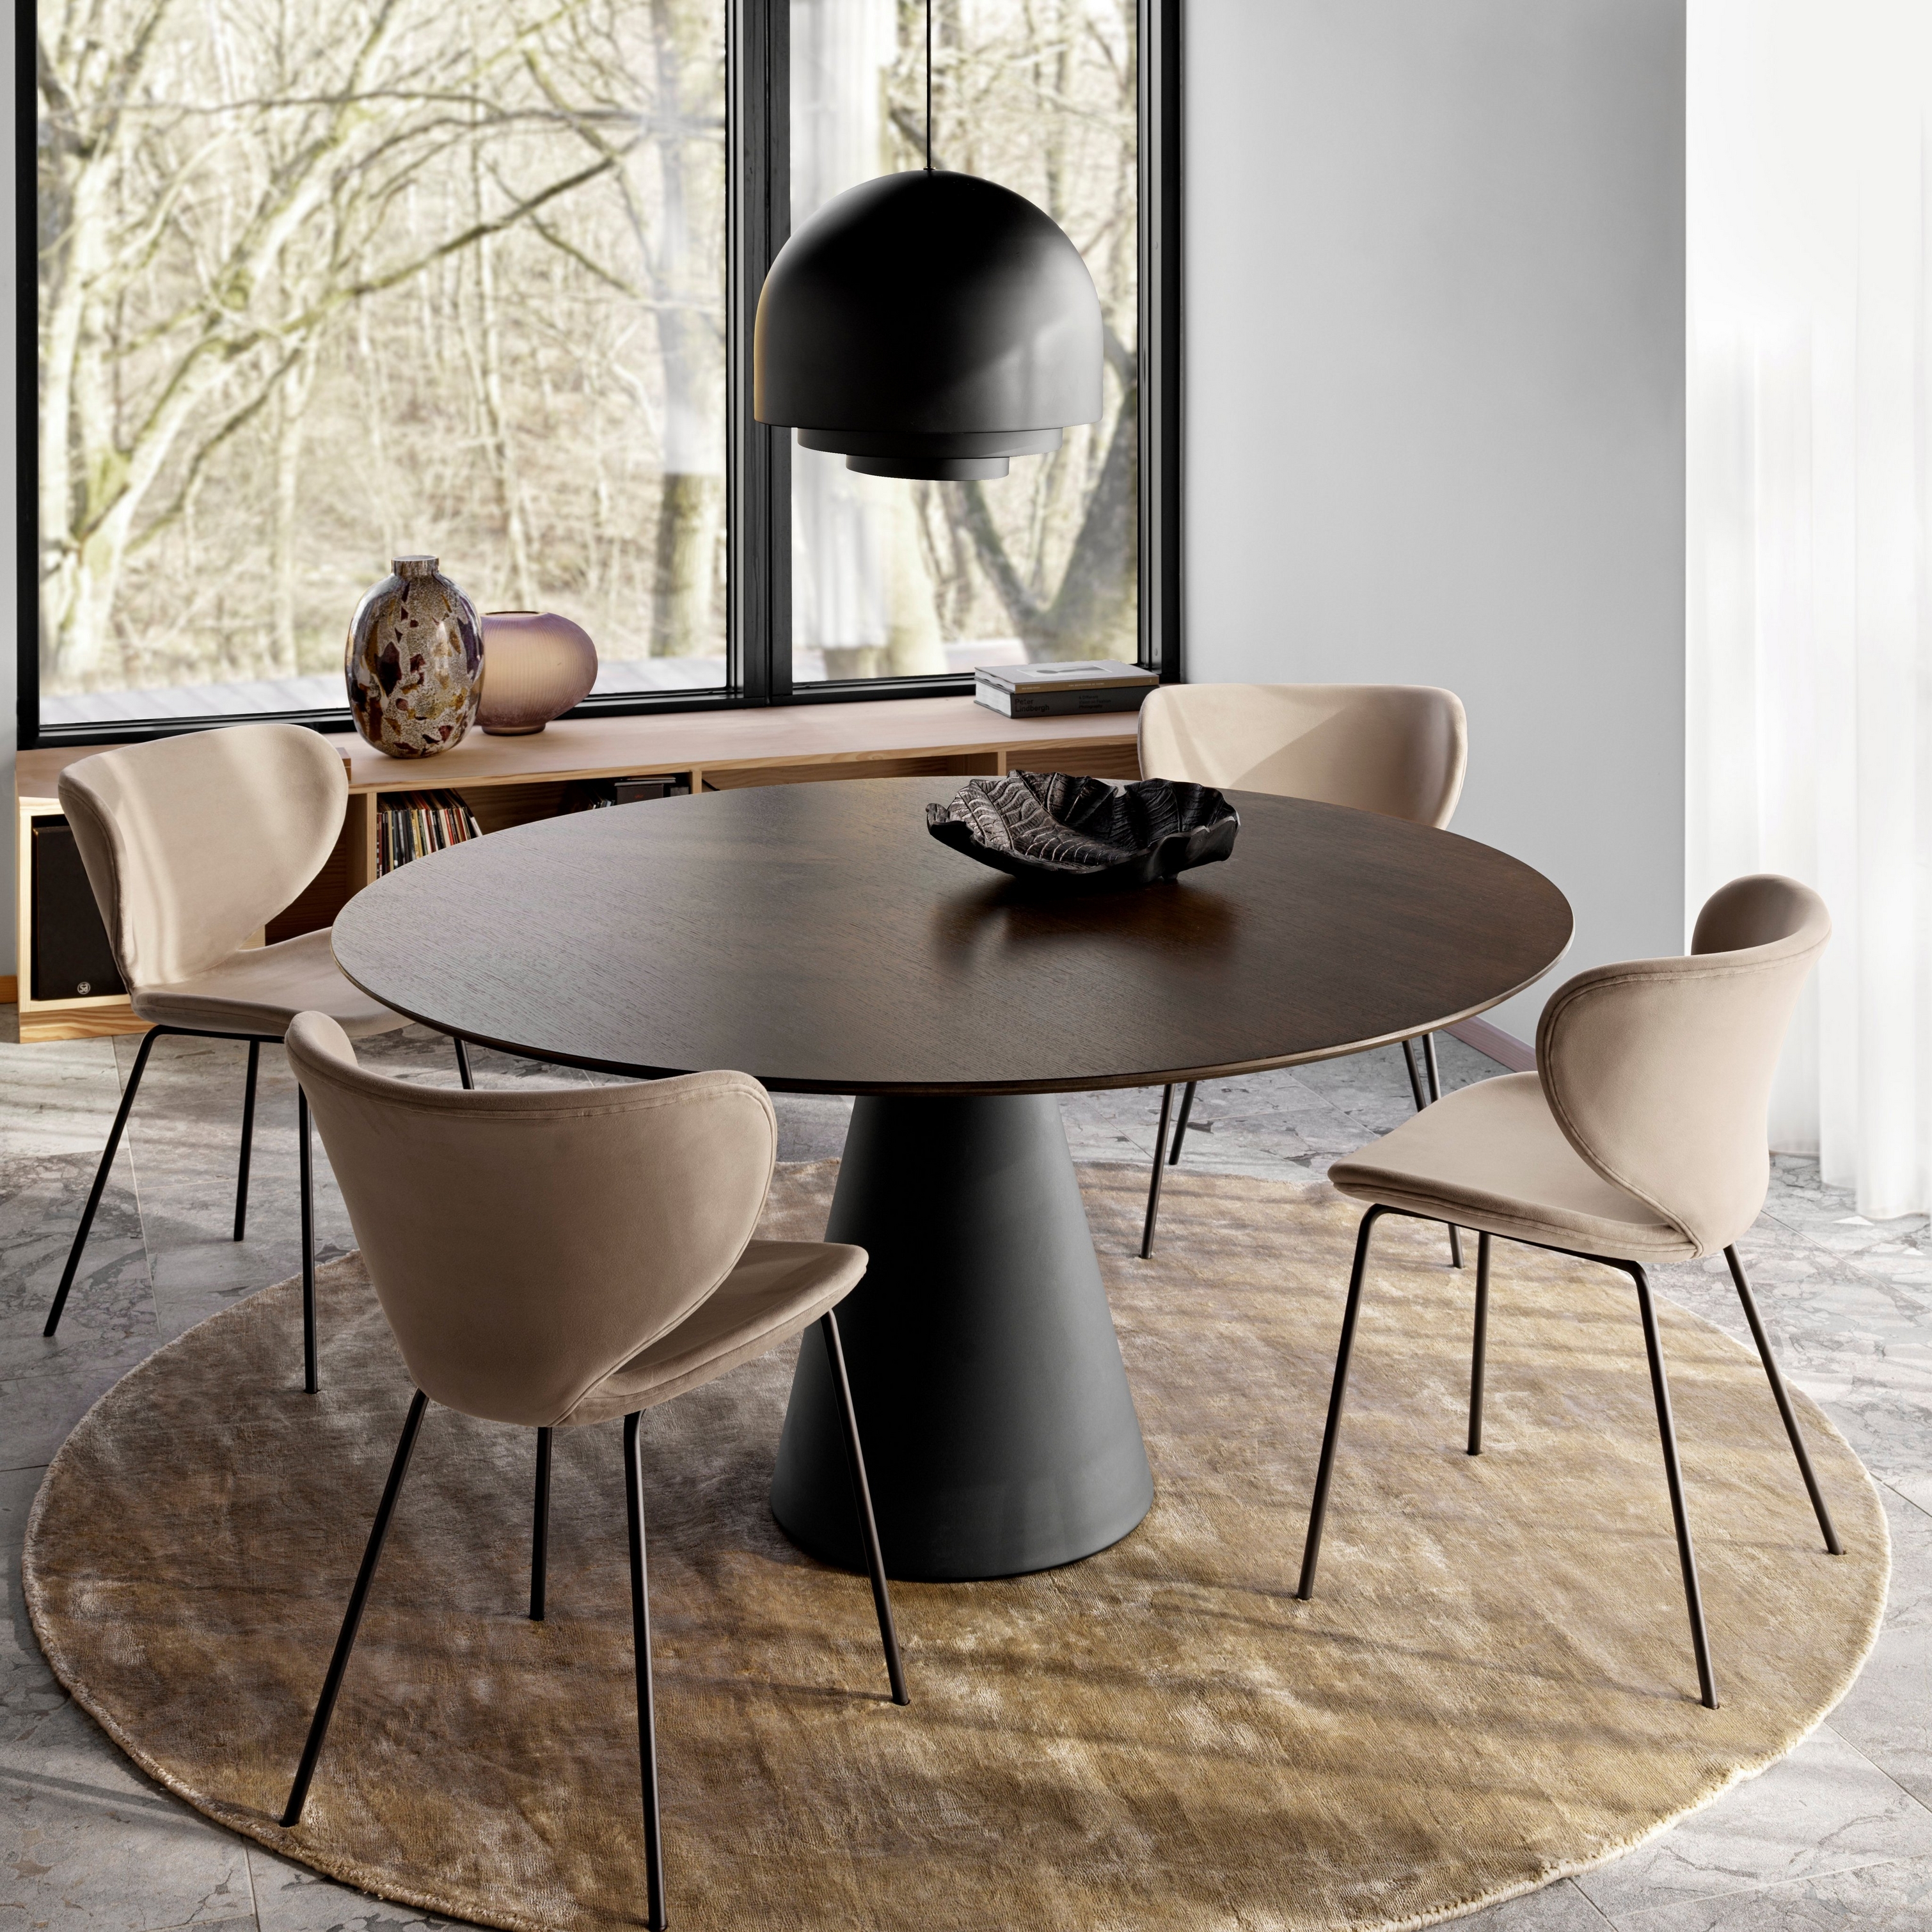 Okrúhly jedálenský stôl na okrúhlom koberci so svetlohnedými stoličkami, veľkým závesným svietidlom v blízkosti okien siahajúcich od podlahy po strop.